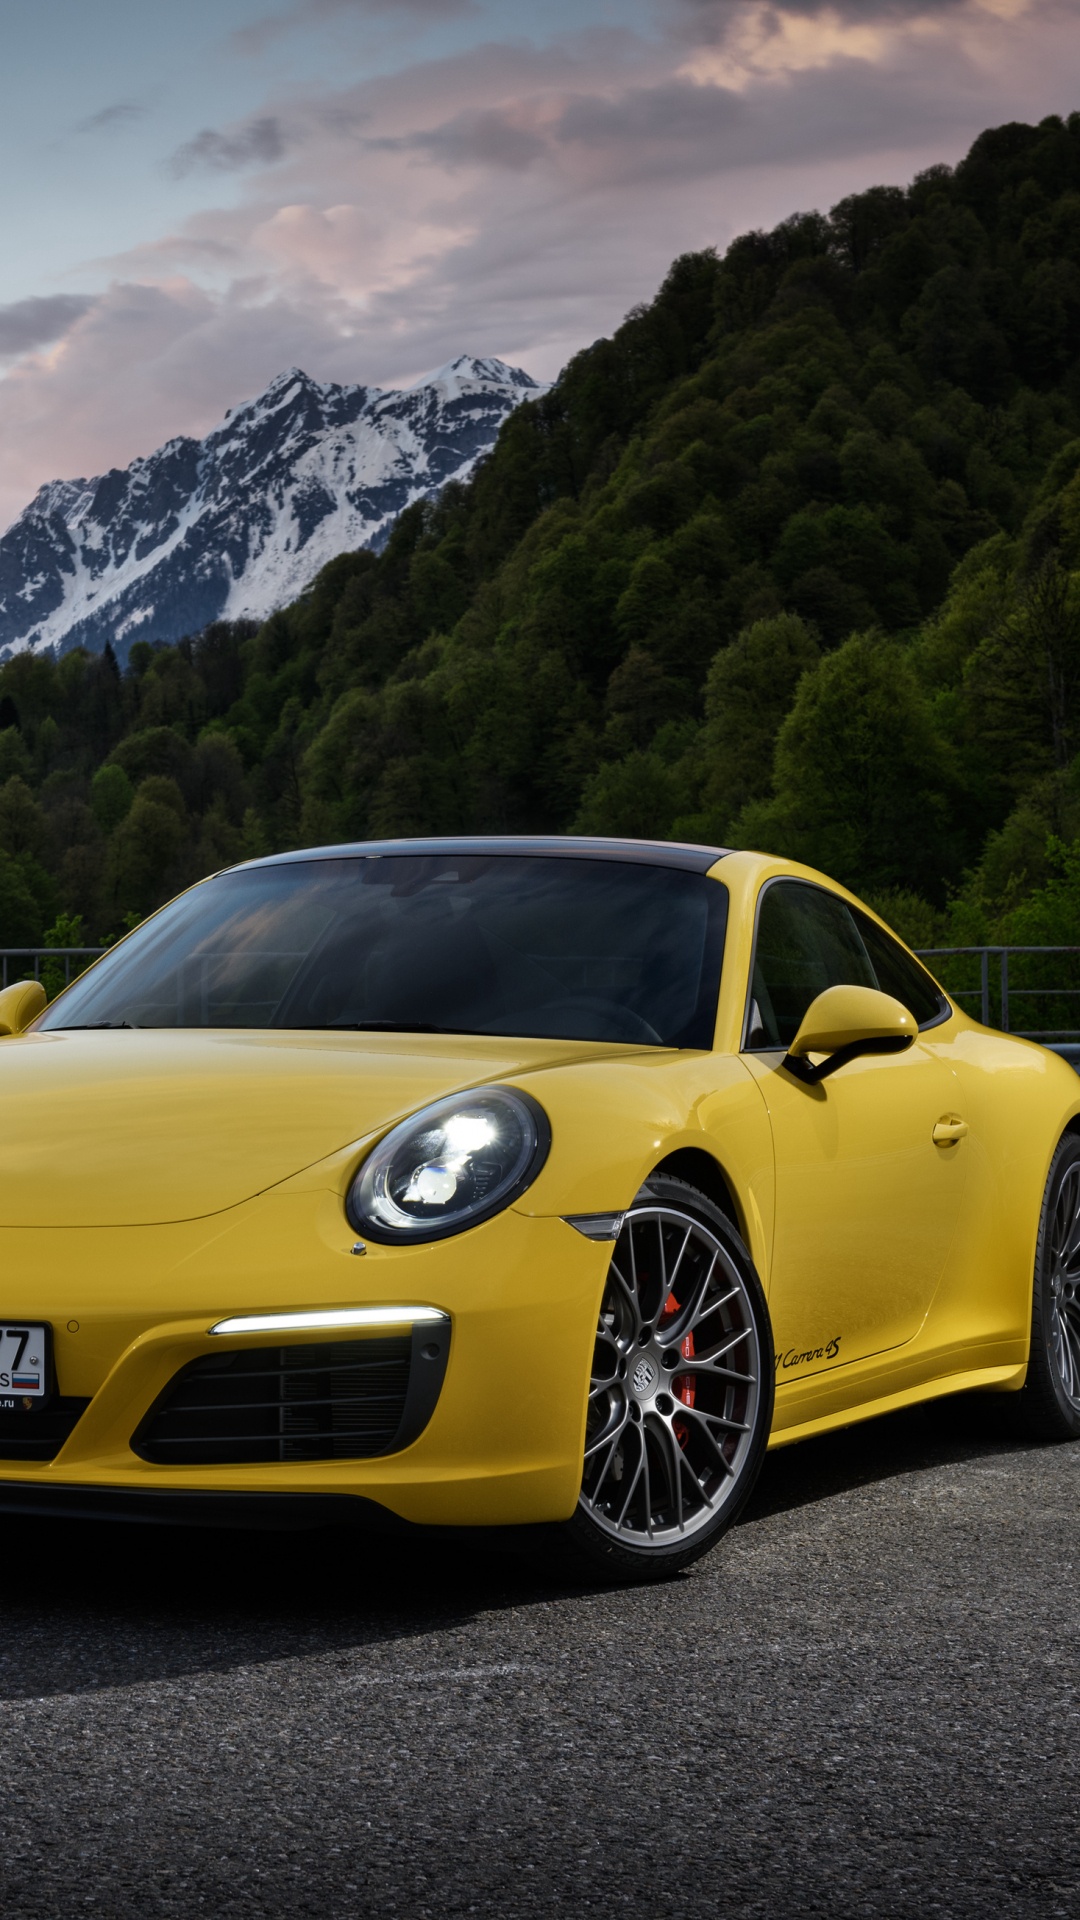 Porsche 911 Jaune Sur Route Près de la Montagne Pendant la Journée. Wallpaper in 1080x1920 Resolution